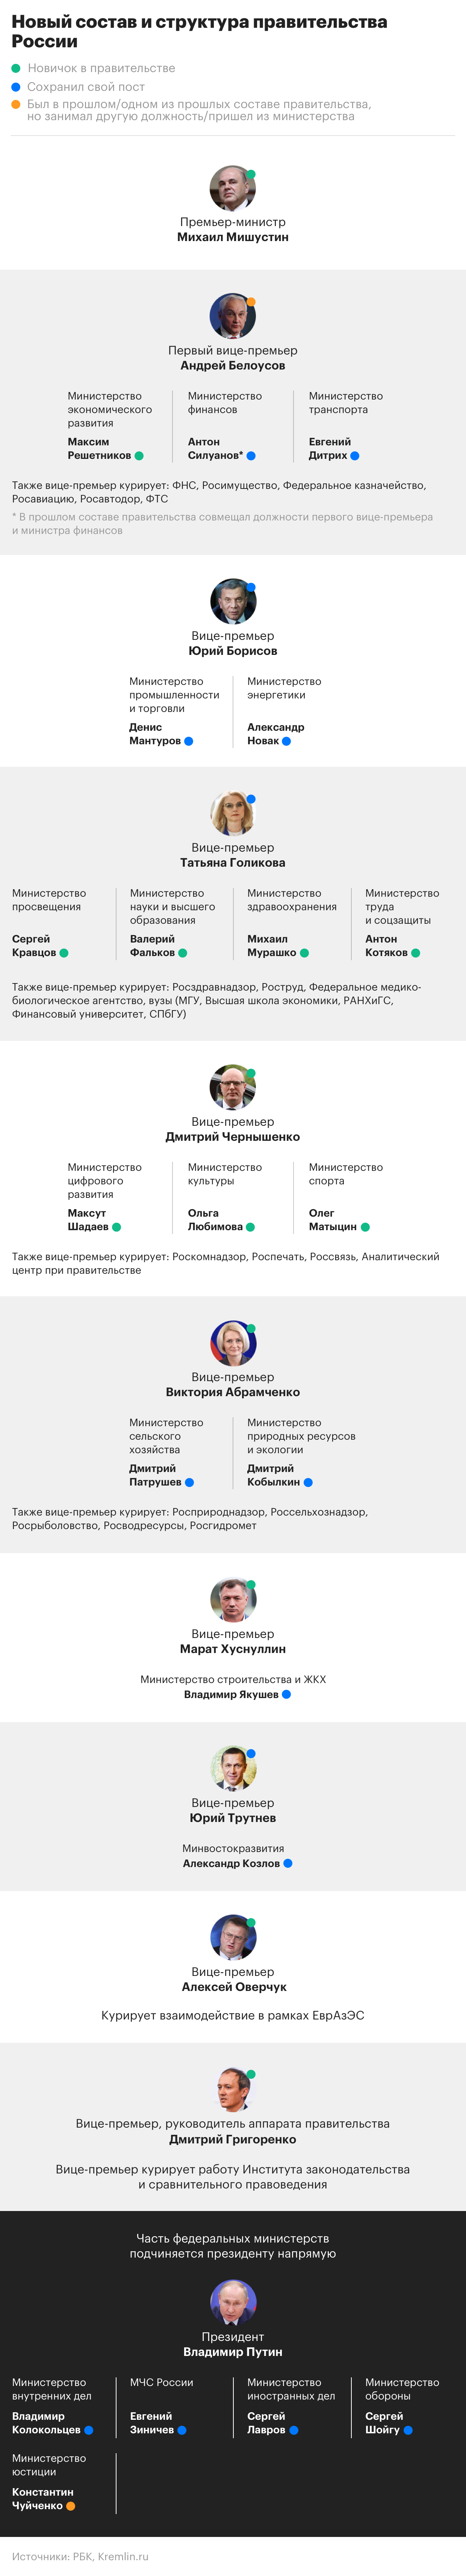 Структура нового российского правительства. Инфографика